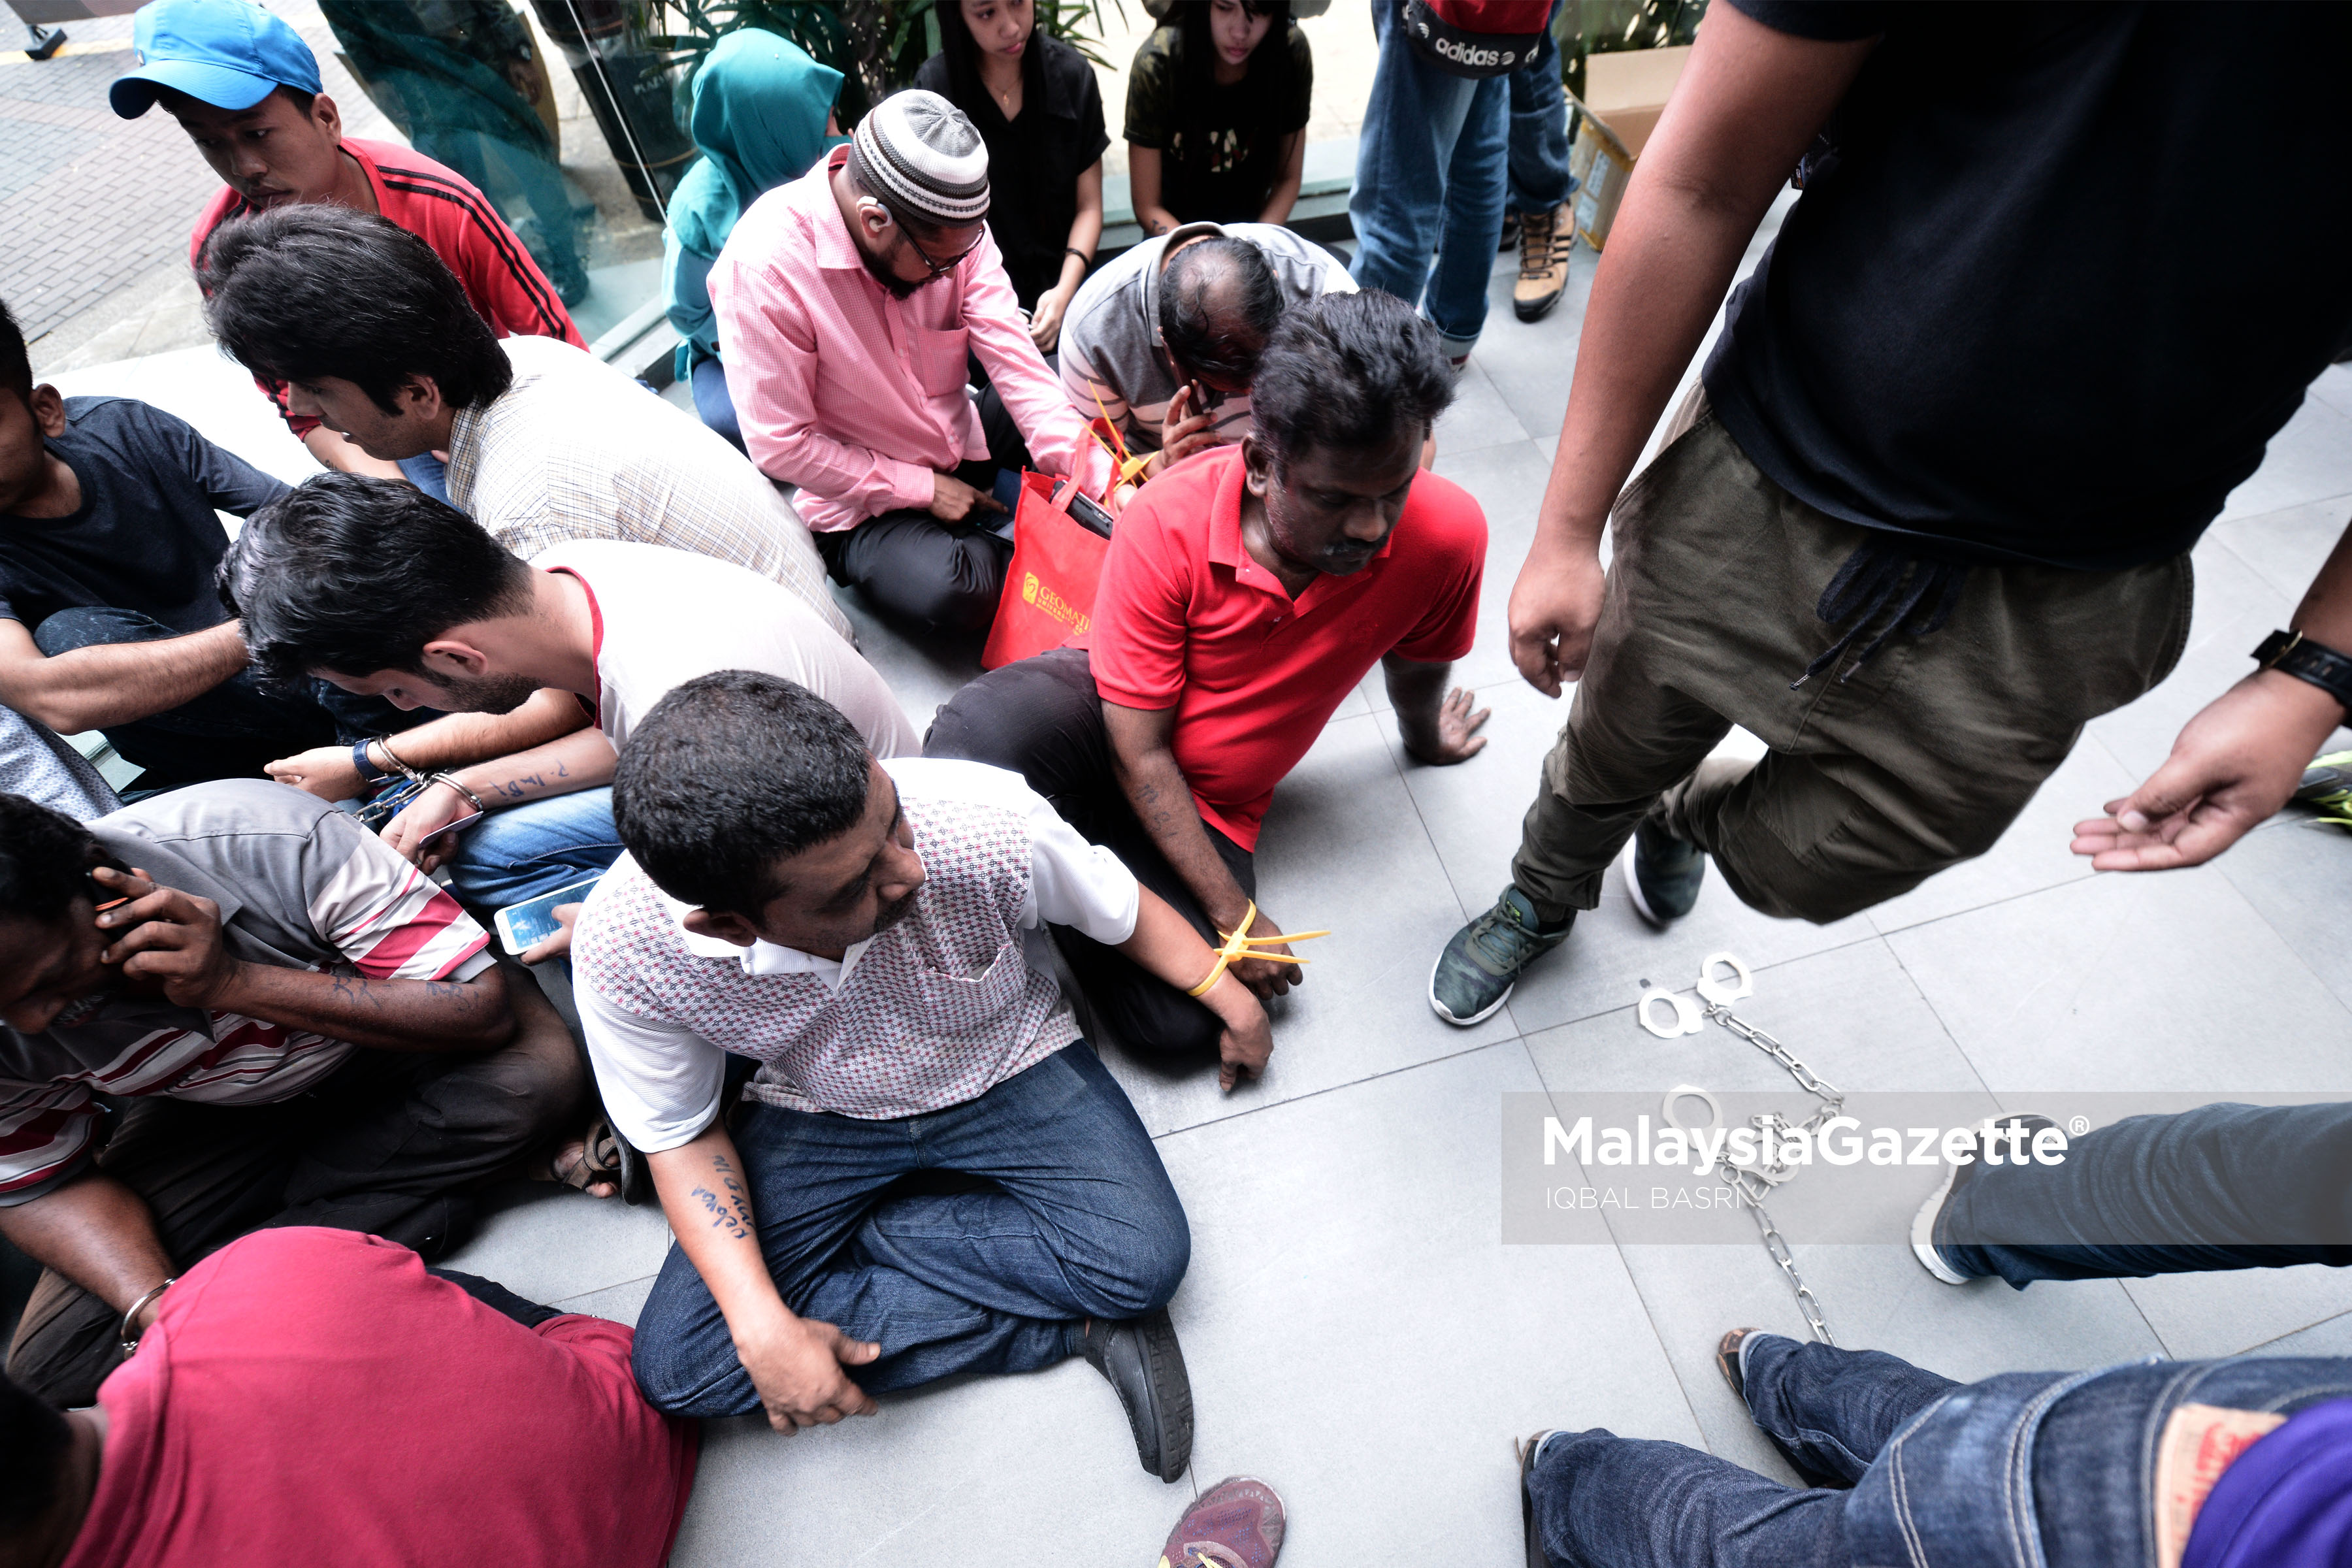 Antara pekerja asing yang ditahan atas pelbagai kesalahan dibawah akta imigresen 1959/63 pada Operasi Jabatan Imigresen di Plaza Low Yat, Kuala Lumpur. foto IQBAL BASRI, 17 MEI 2017.